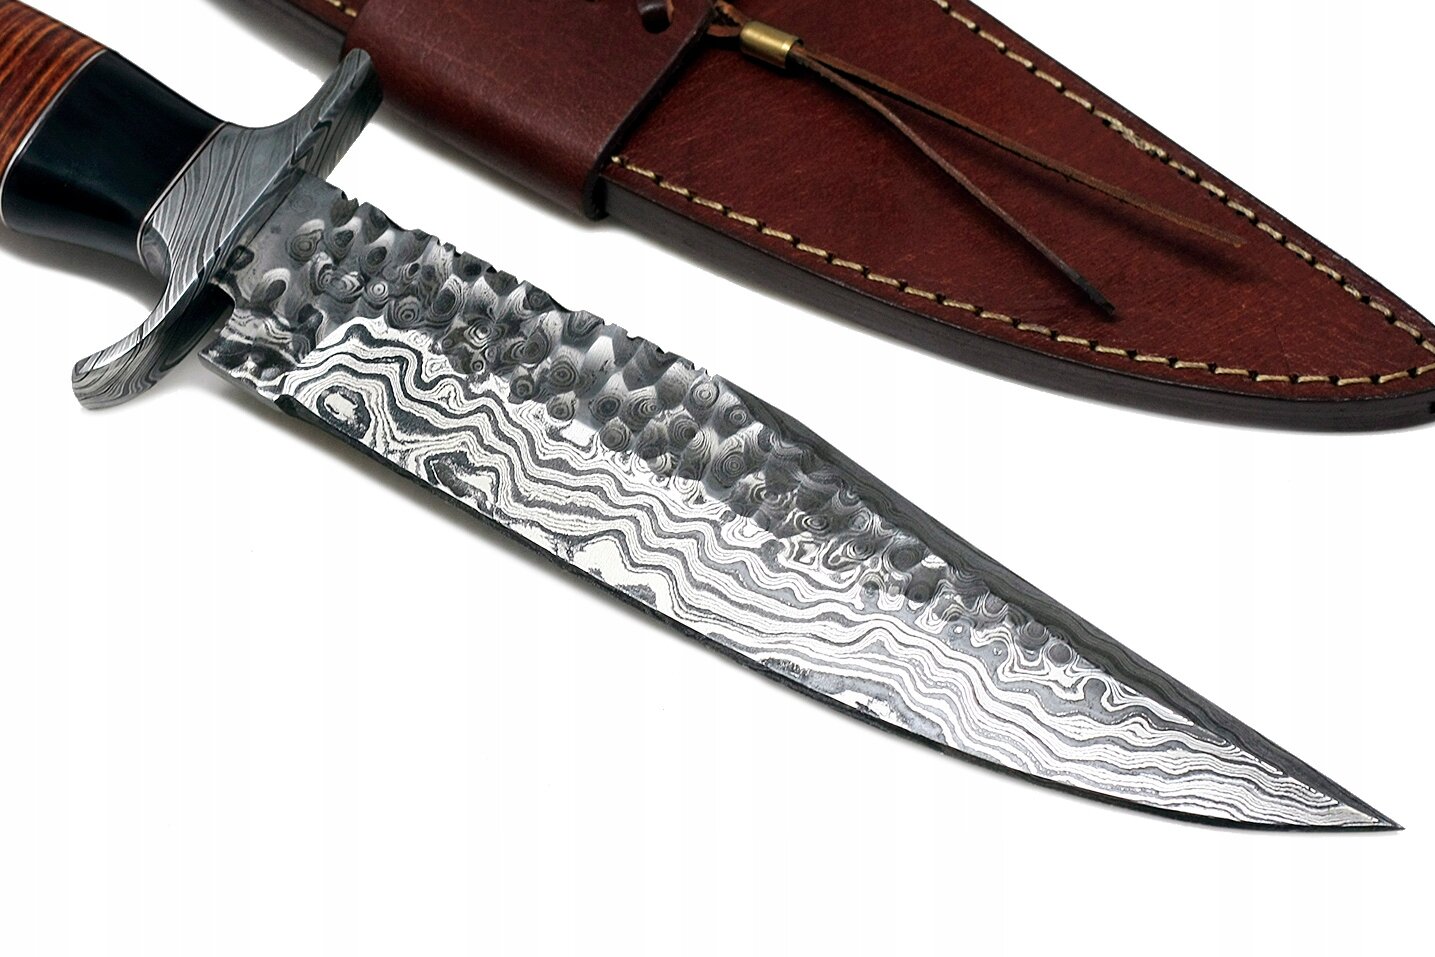 Turistinis peilis Impact Custom Knives HS-368, 13 cm kaina ir informacija | Turistiniai peiliai, daugiafunkciniai įrankiai | pigu.lt